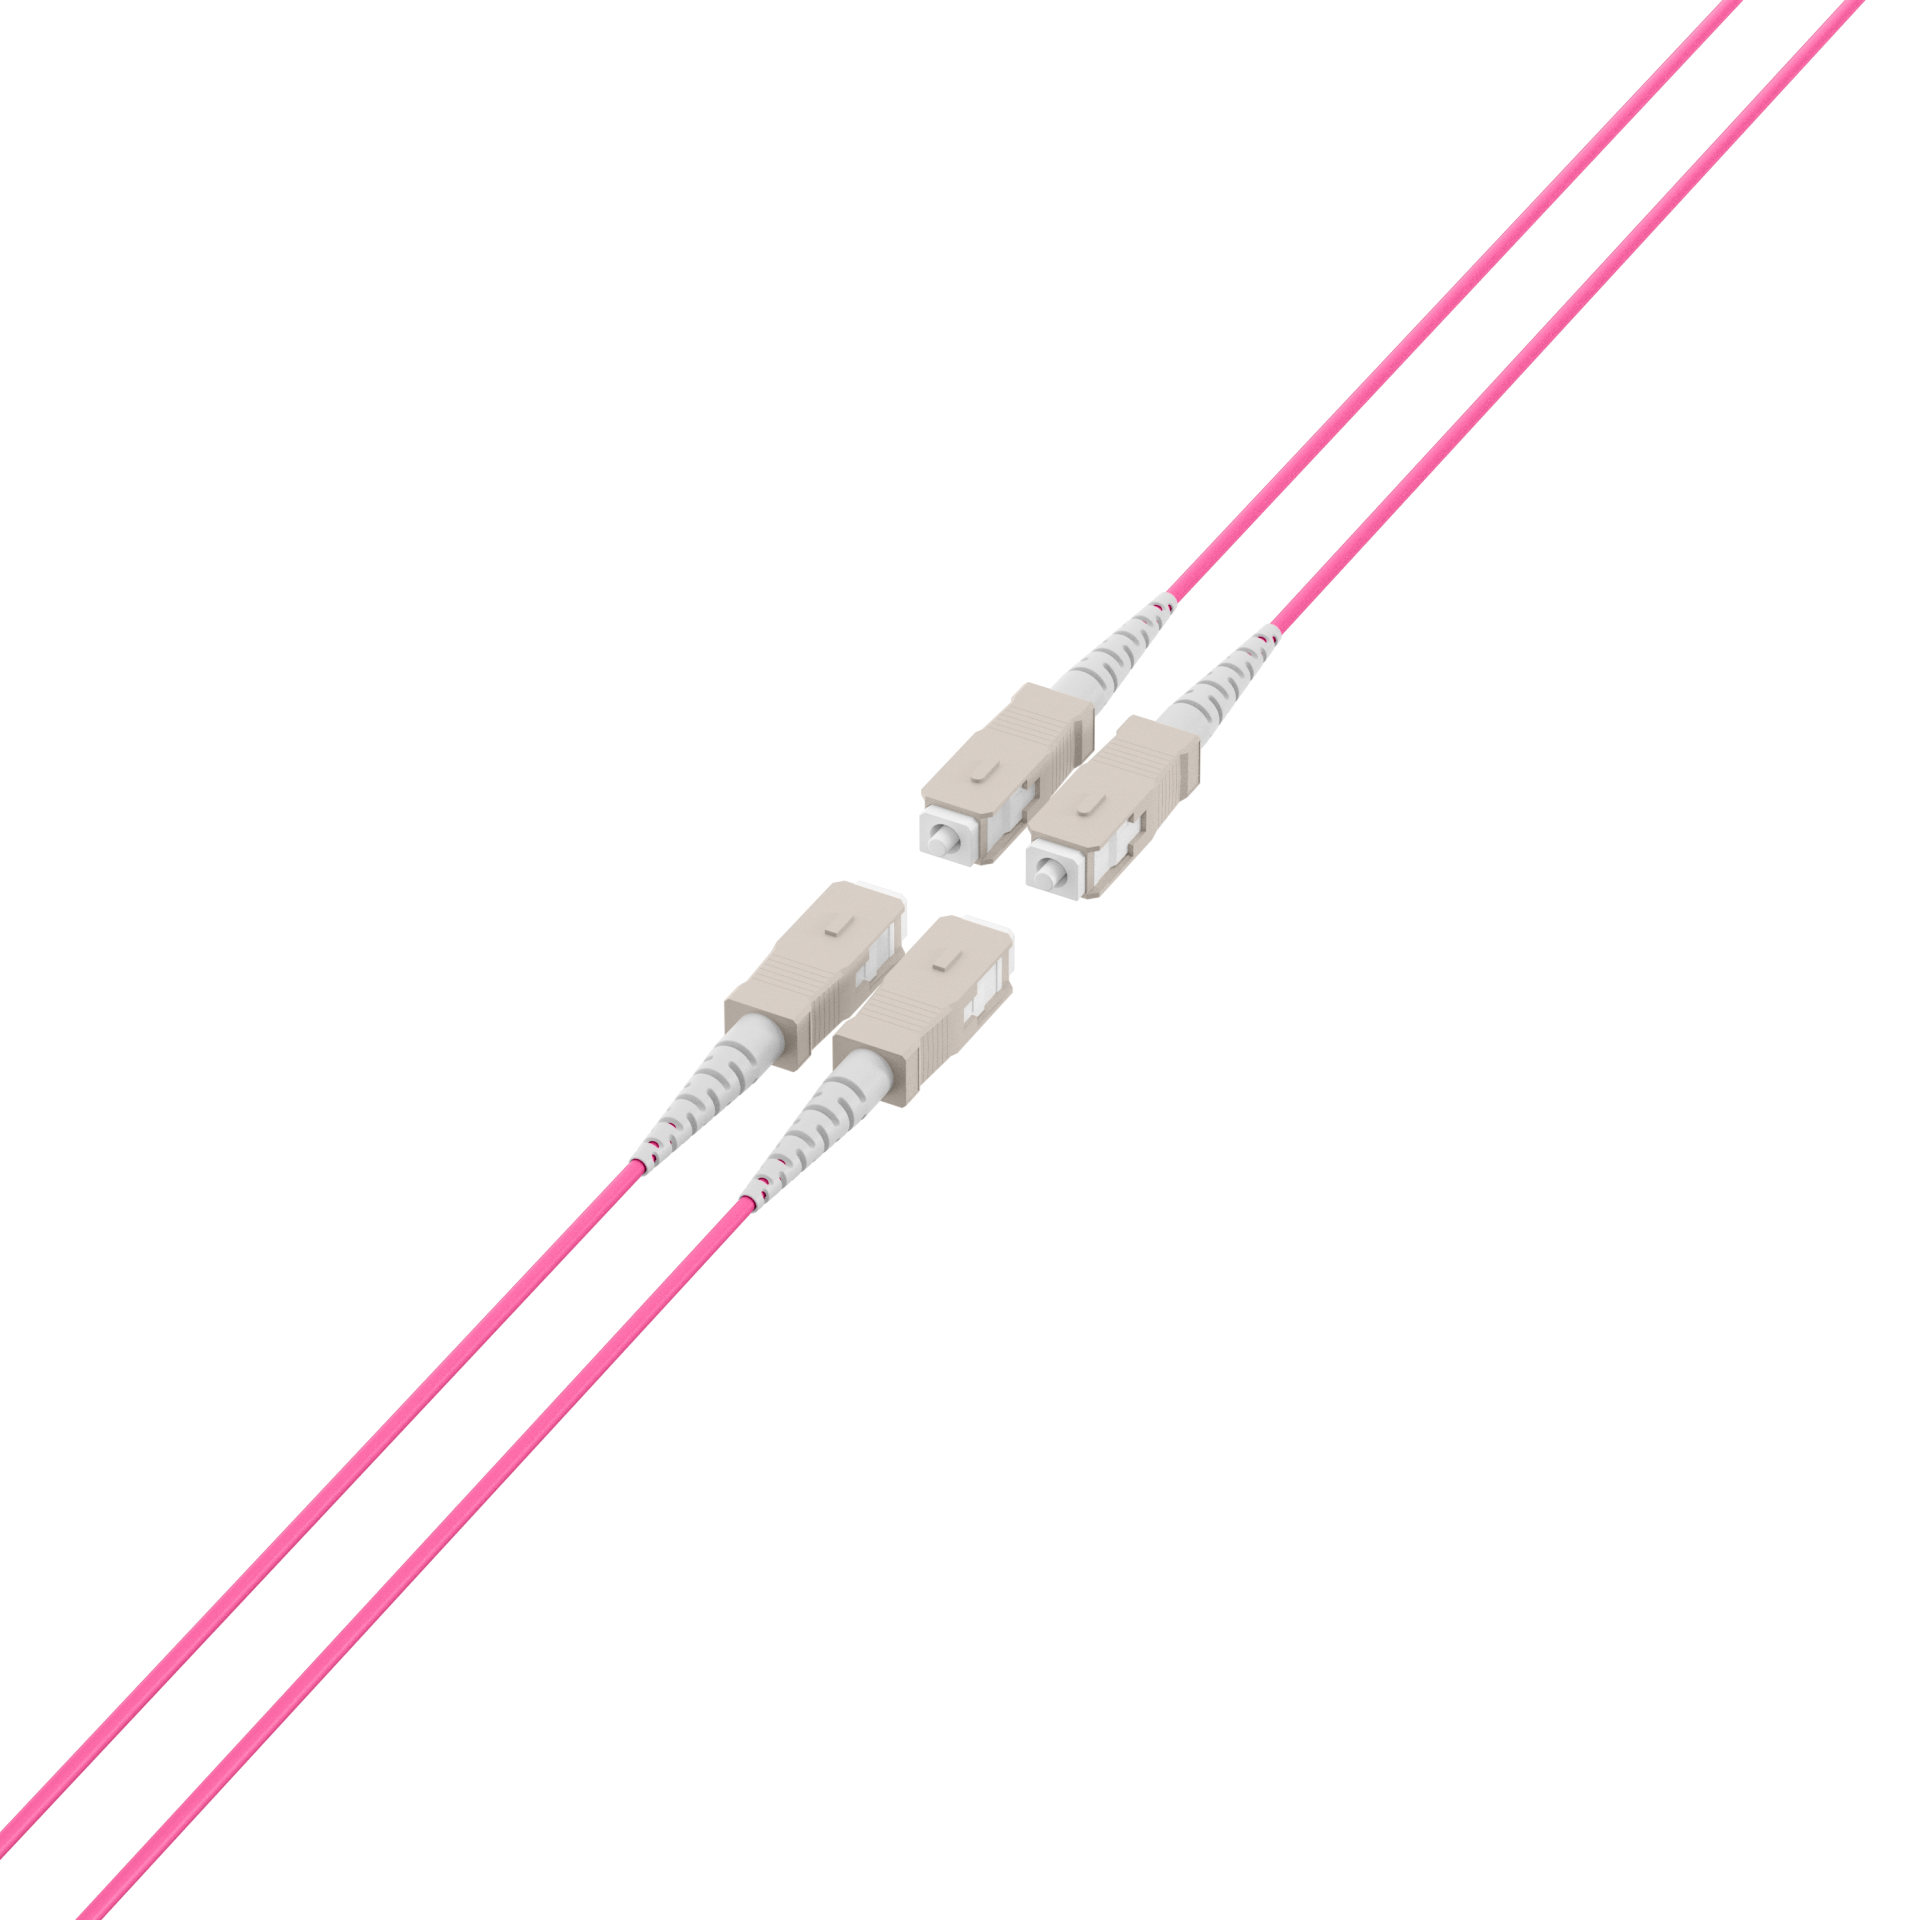 Trunk cable U-DQ(ZN)BH OM4 4G (1x4) SC-SC,150m Dca LSZH